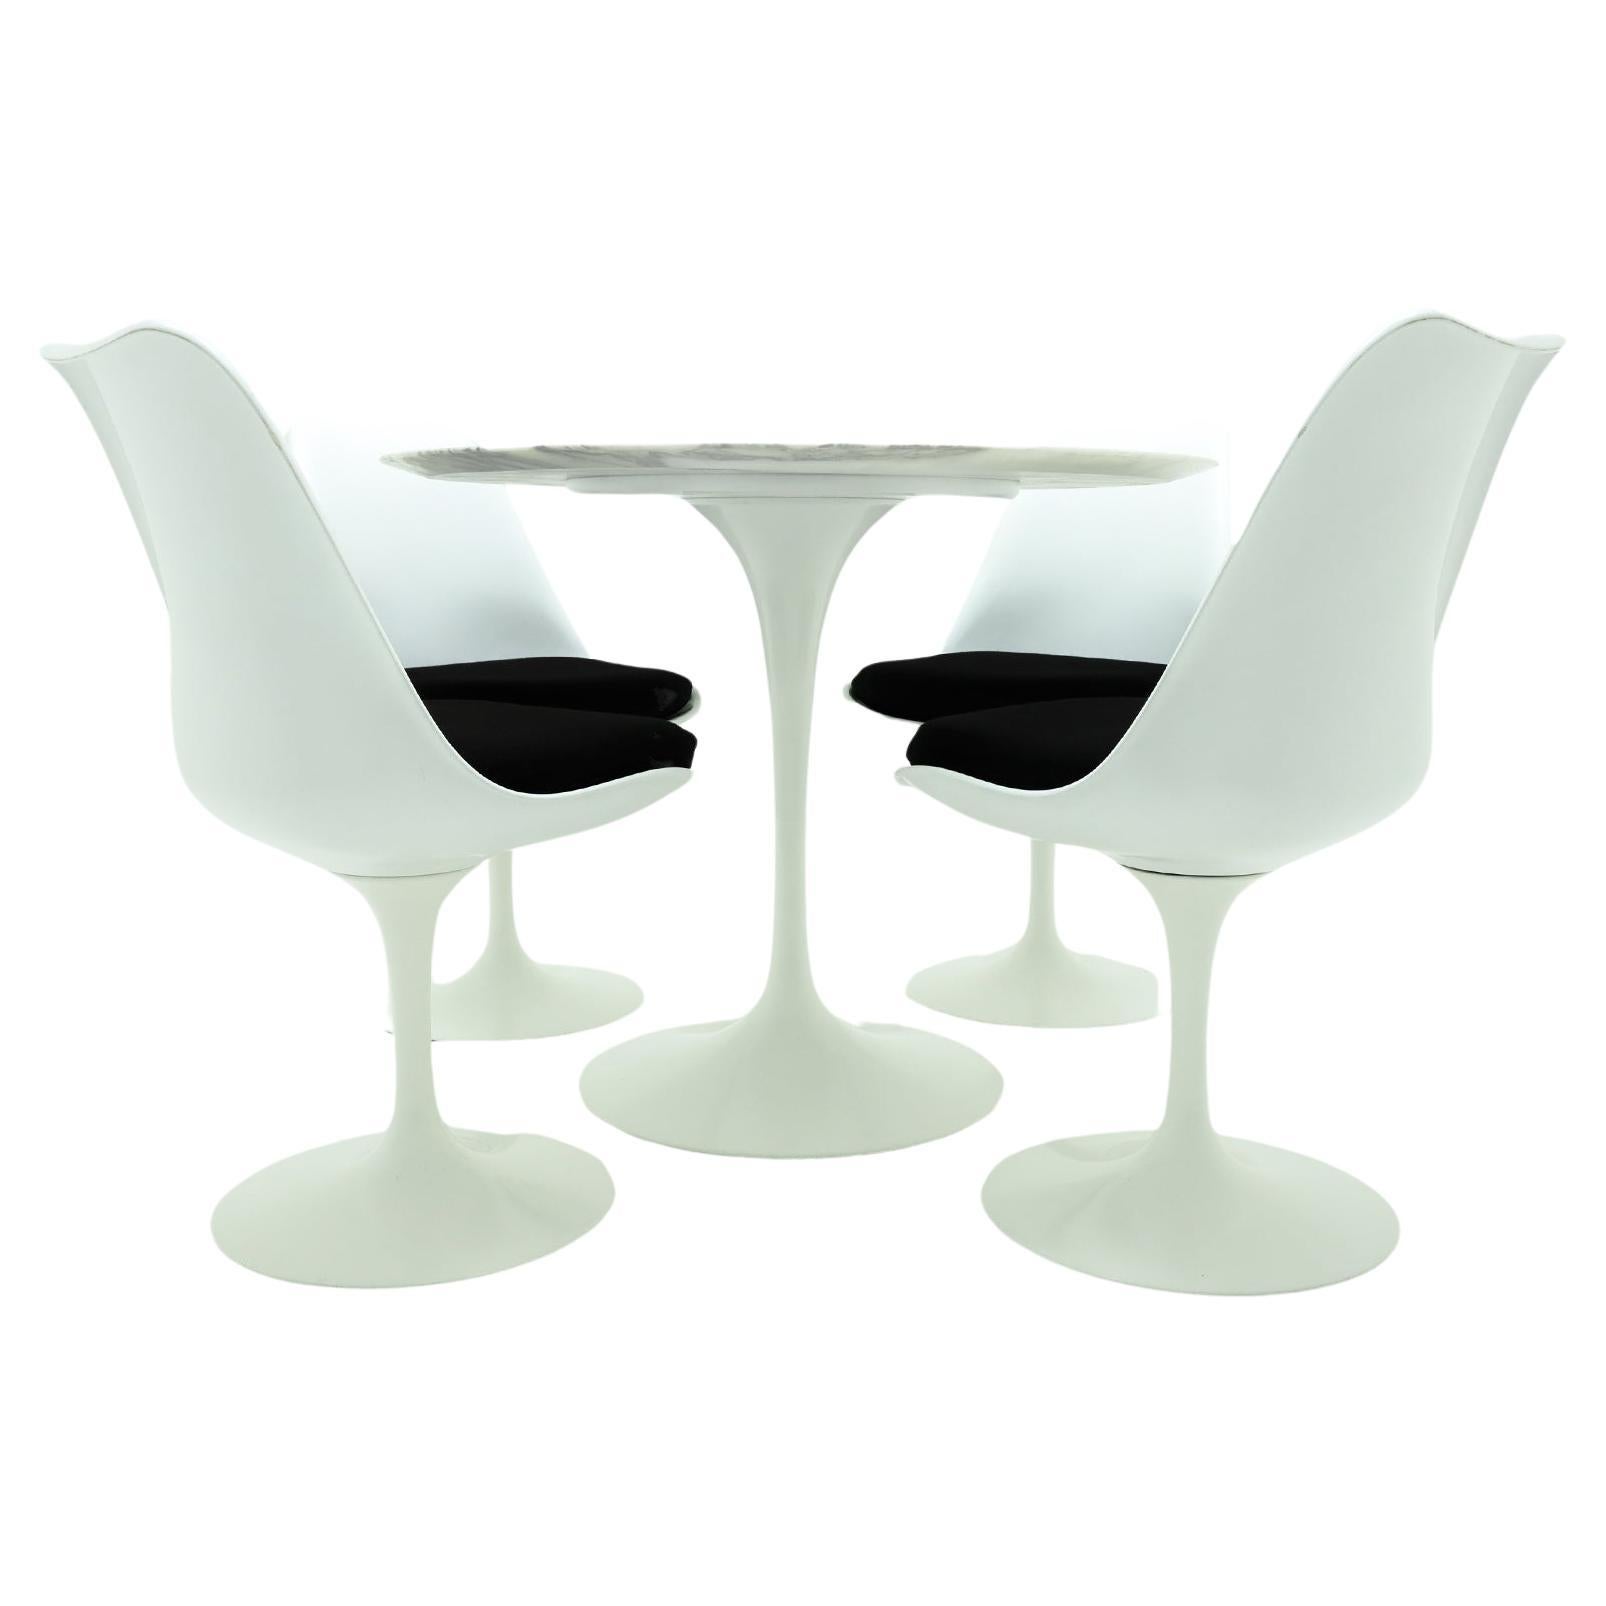 Weißer Knoll, Saarinen Calacatta-Marmor- Tulpen-Esstisch mit 4 passenden Stühlen